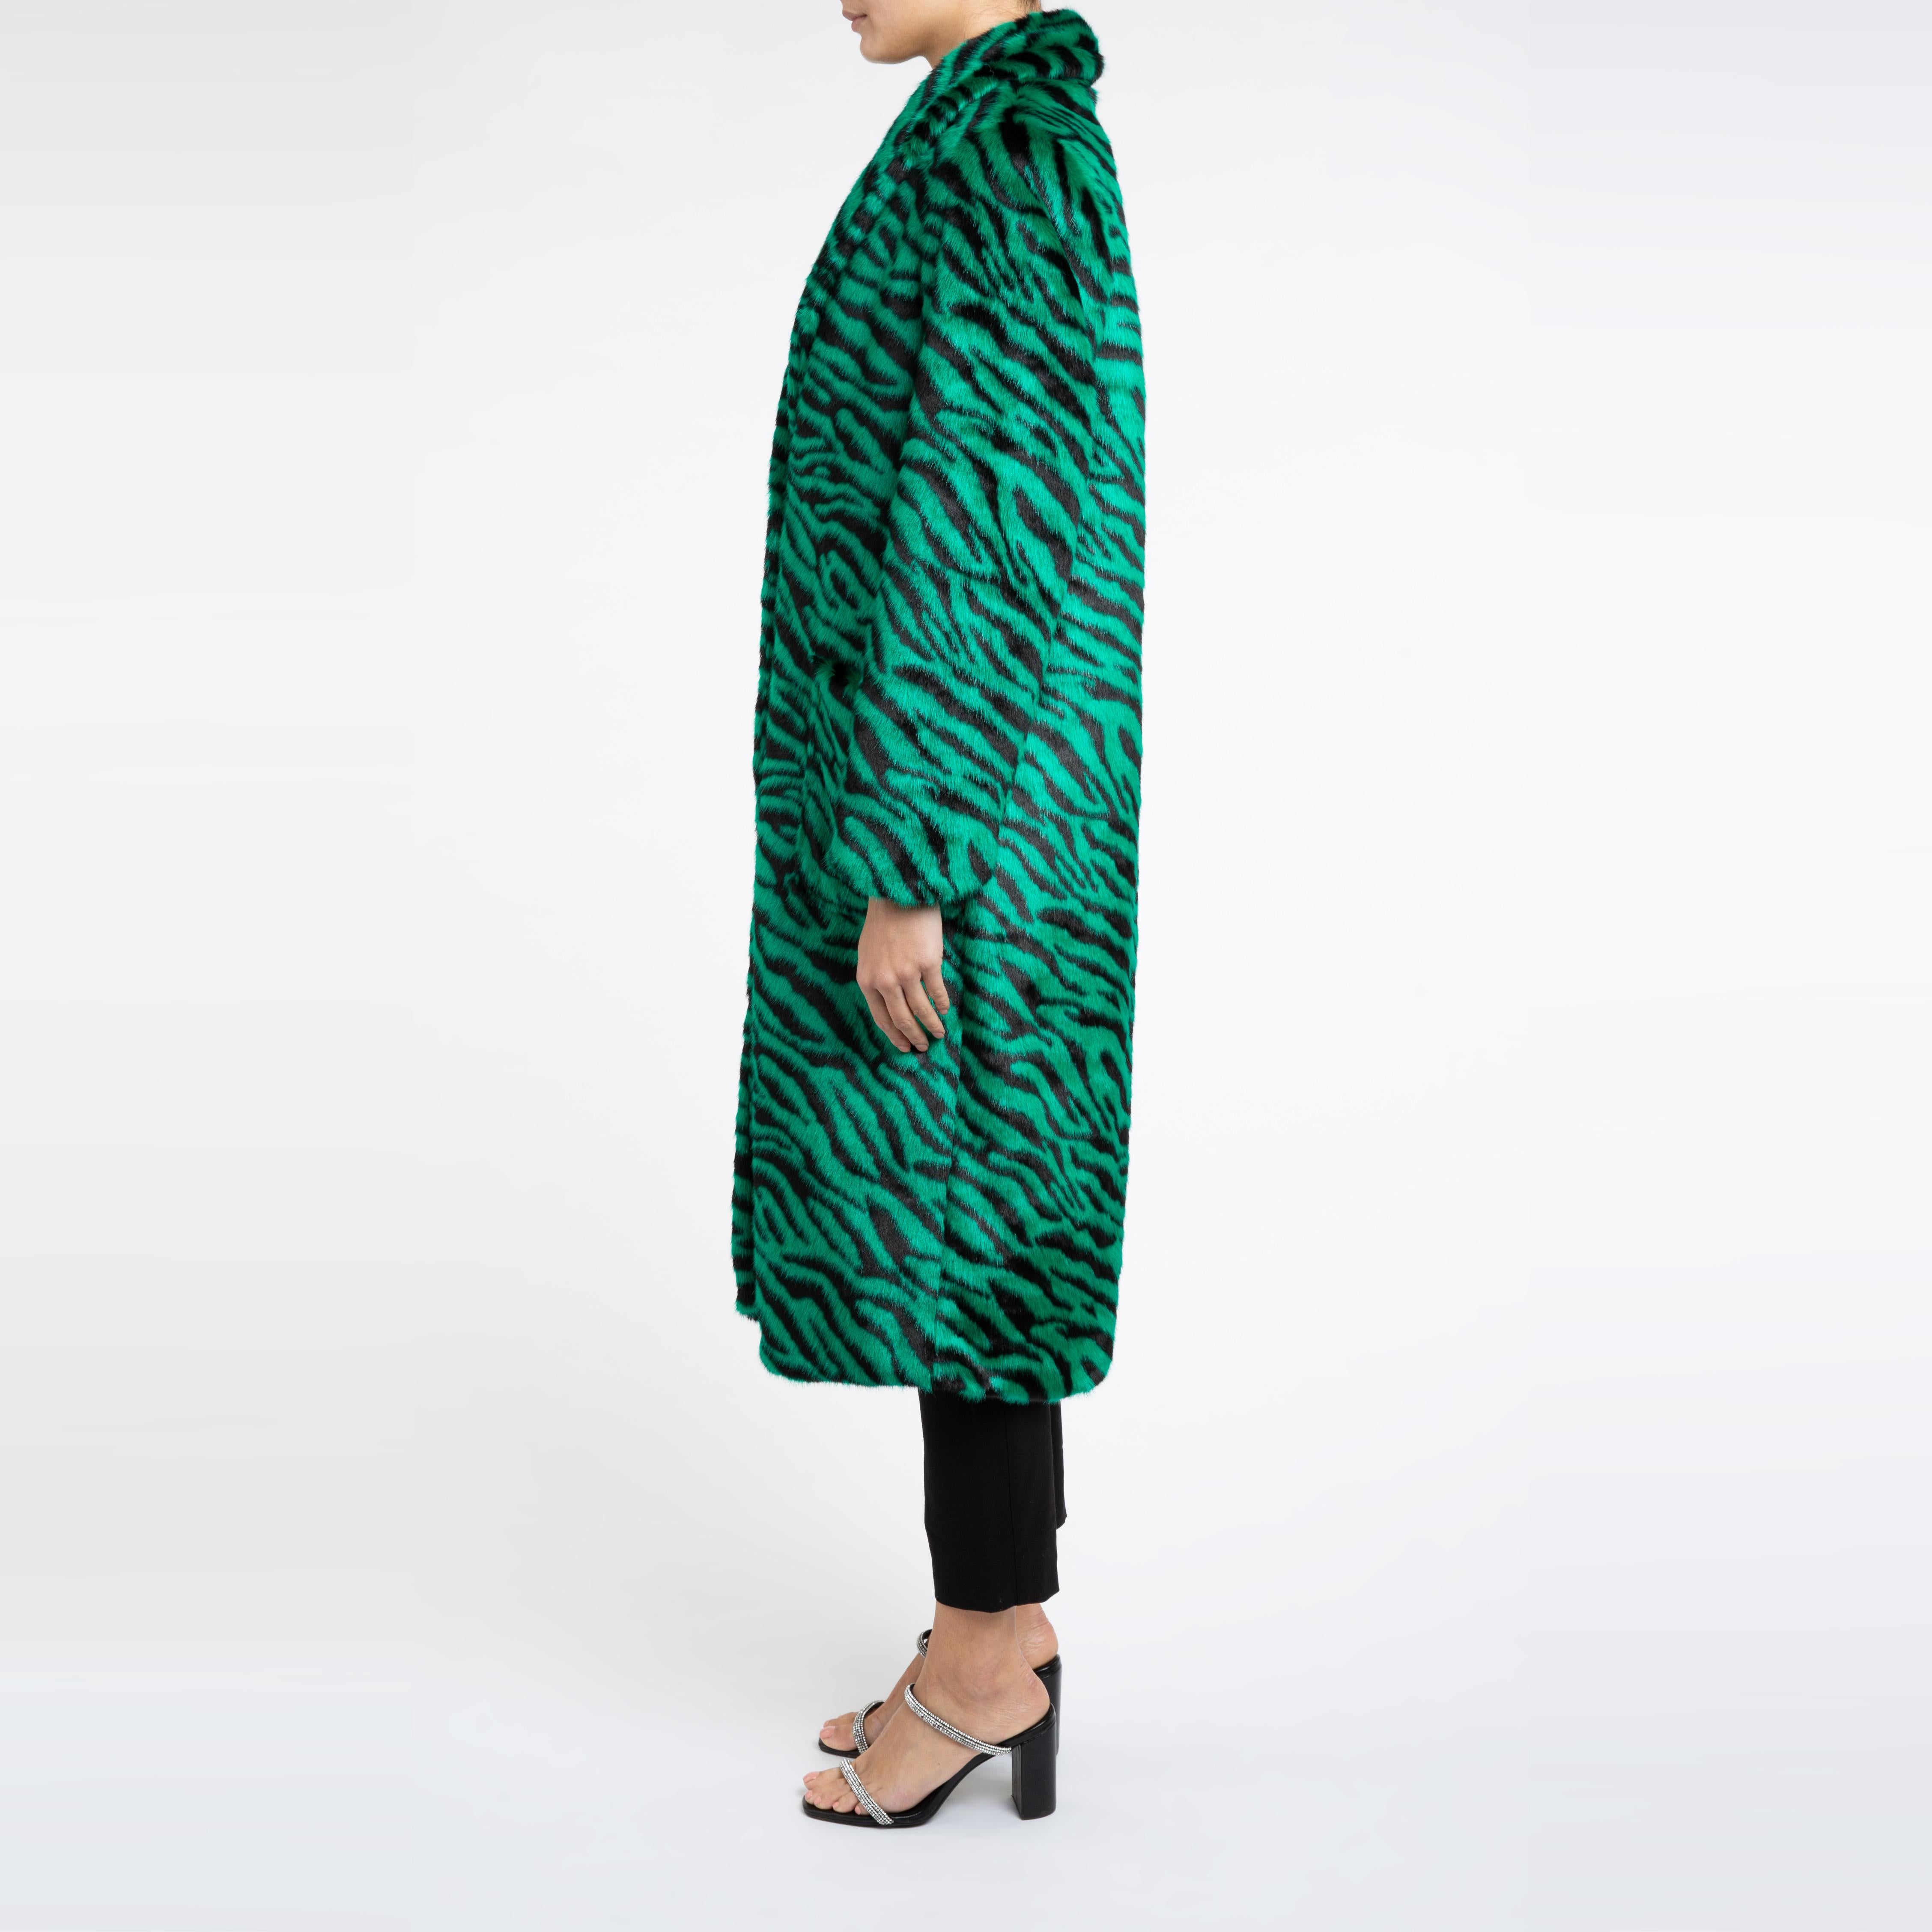 Esmeralda Kunstfell Mantel in Smaragdgrün Zebra Print Größe uk 12

Ein Mantel, den man sowohl zu Jeans als auch zu einem Kleid tragen kann und der Sie in der kalten Jahreszeit warm hält. 
Dieses Longline-Design ist schmeichelhaft und lässt sich mit